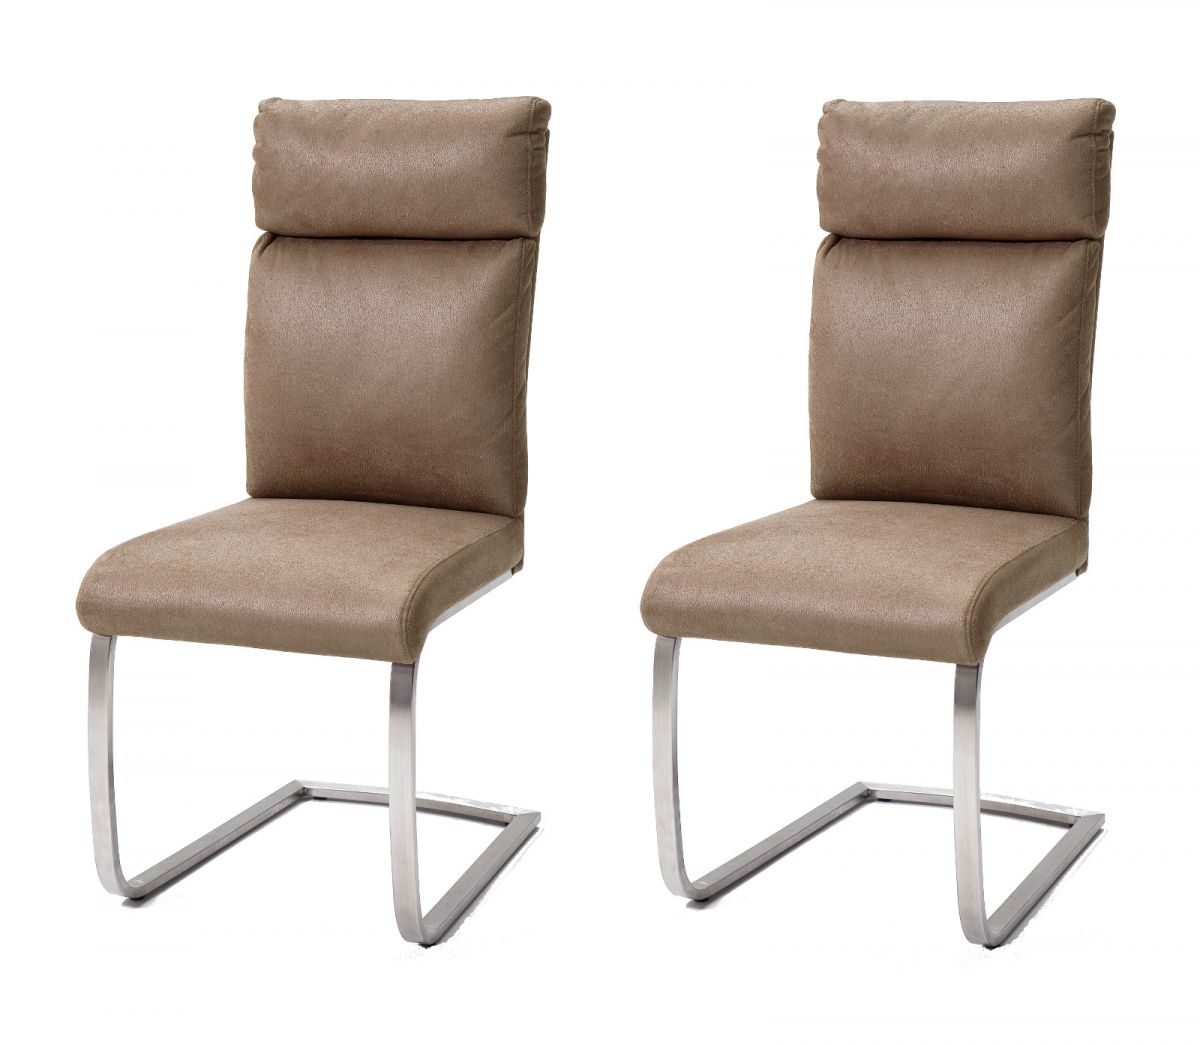 2 x Stuhl Rabea in Sand Vintage Lederlook und Edelstahl Freischwinger mit Griff hinten Esszimmerstuhl 2er Set